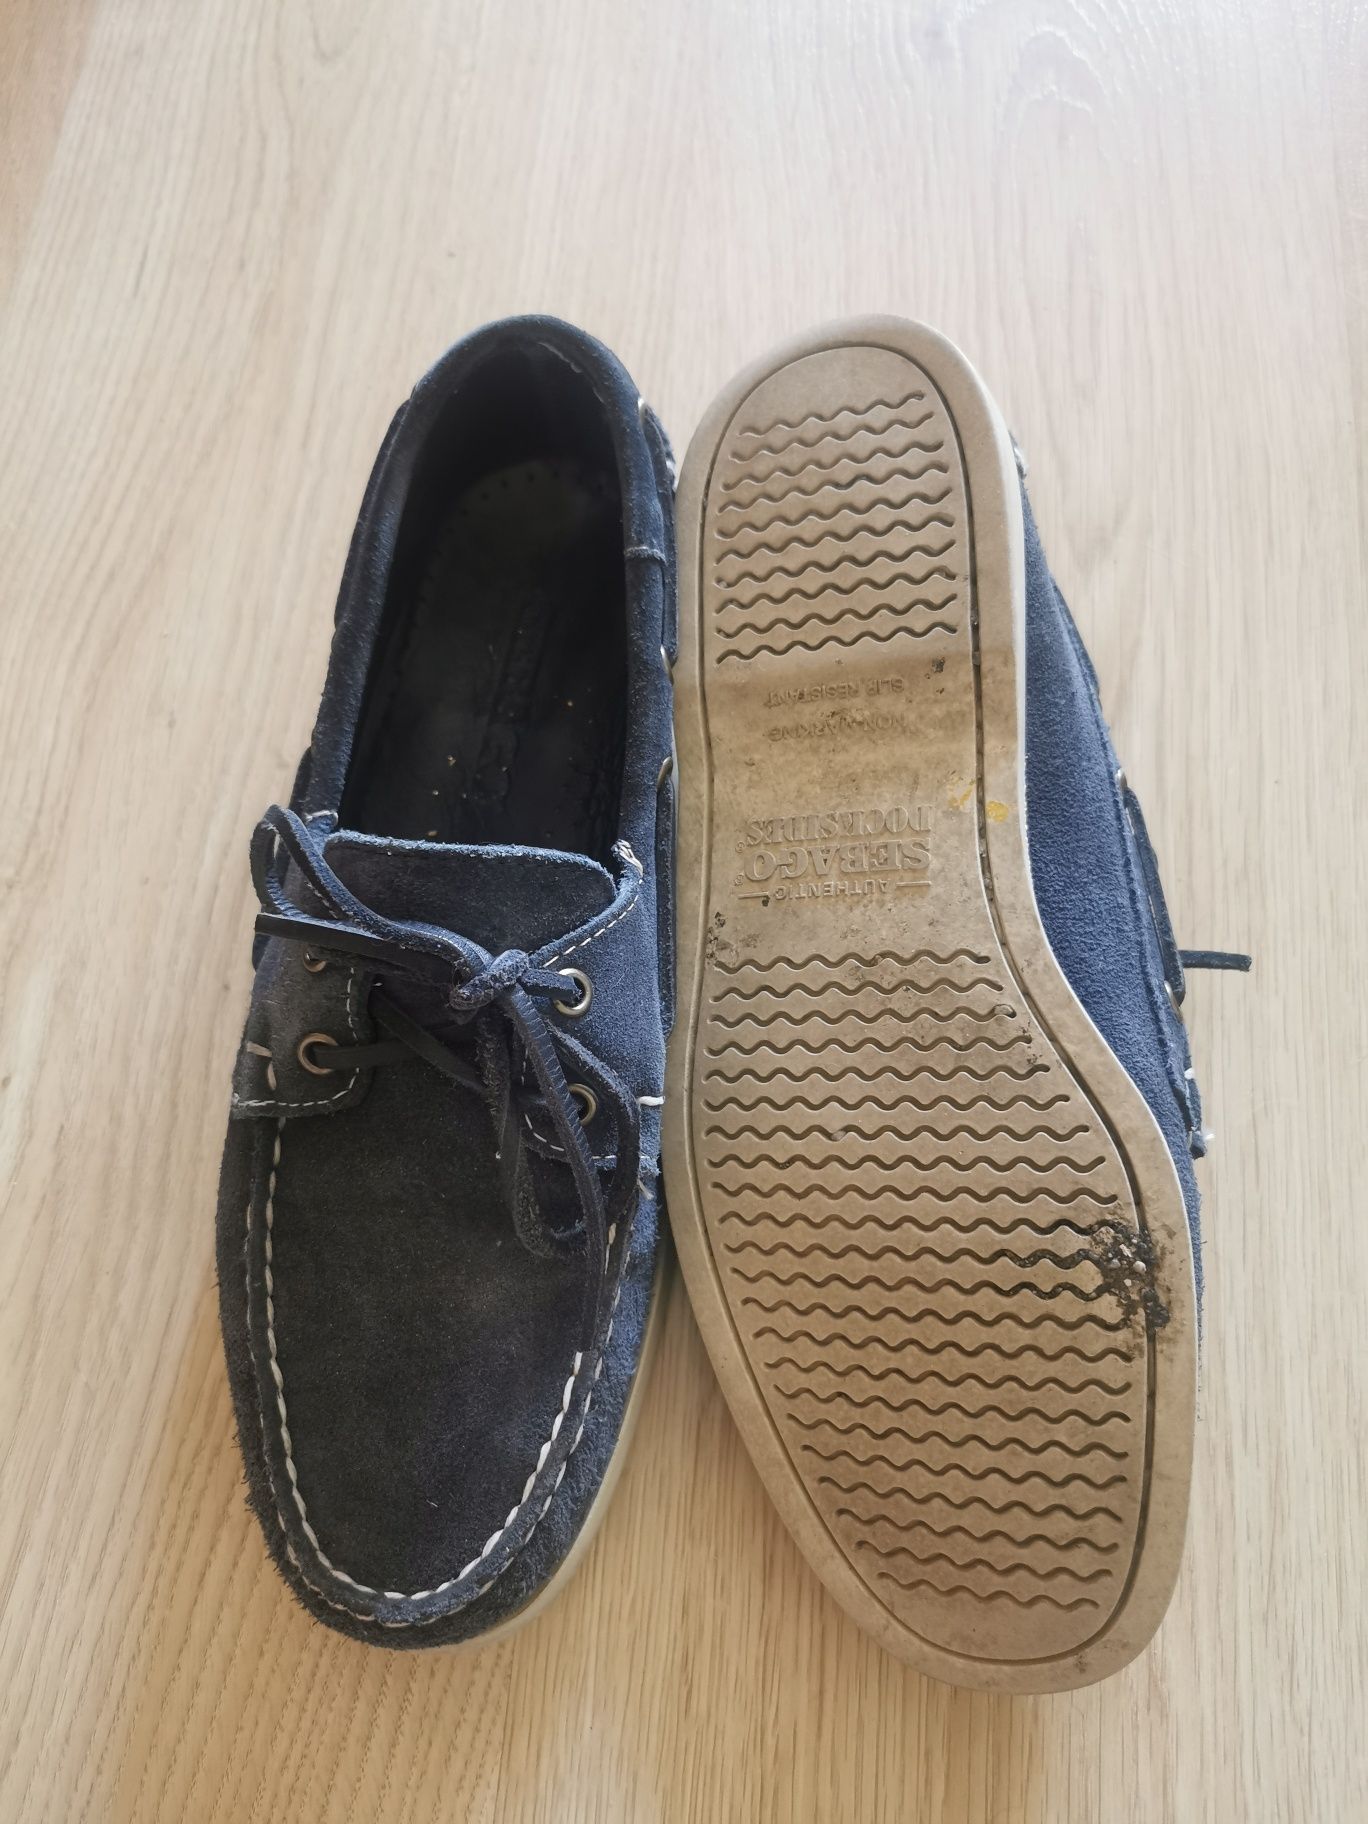 Granatowe buty żeglarskie Sebago, rozmiar 42